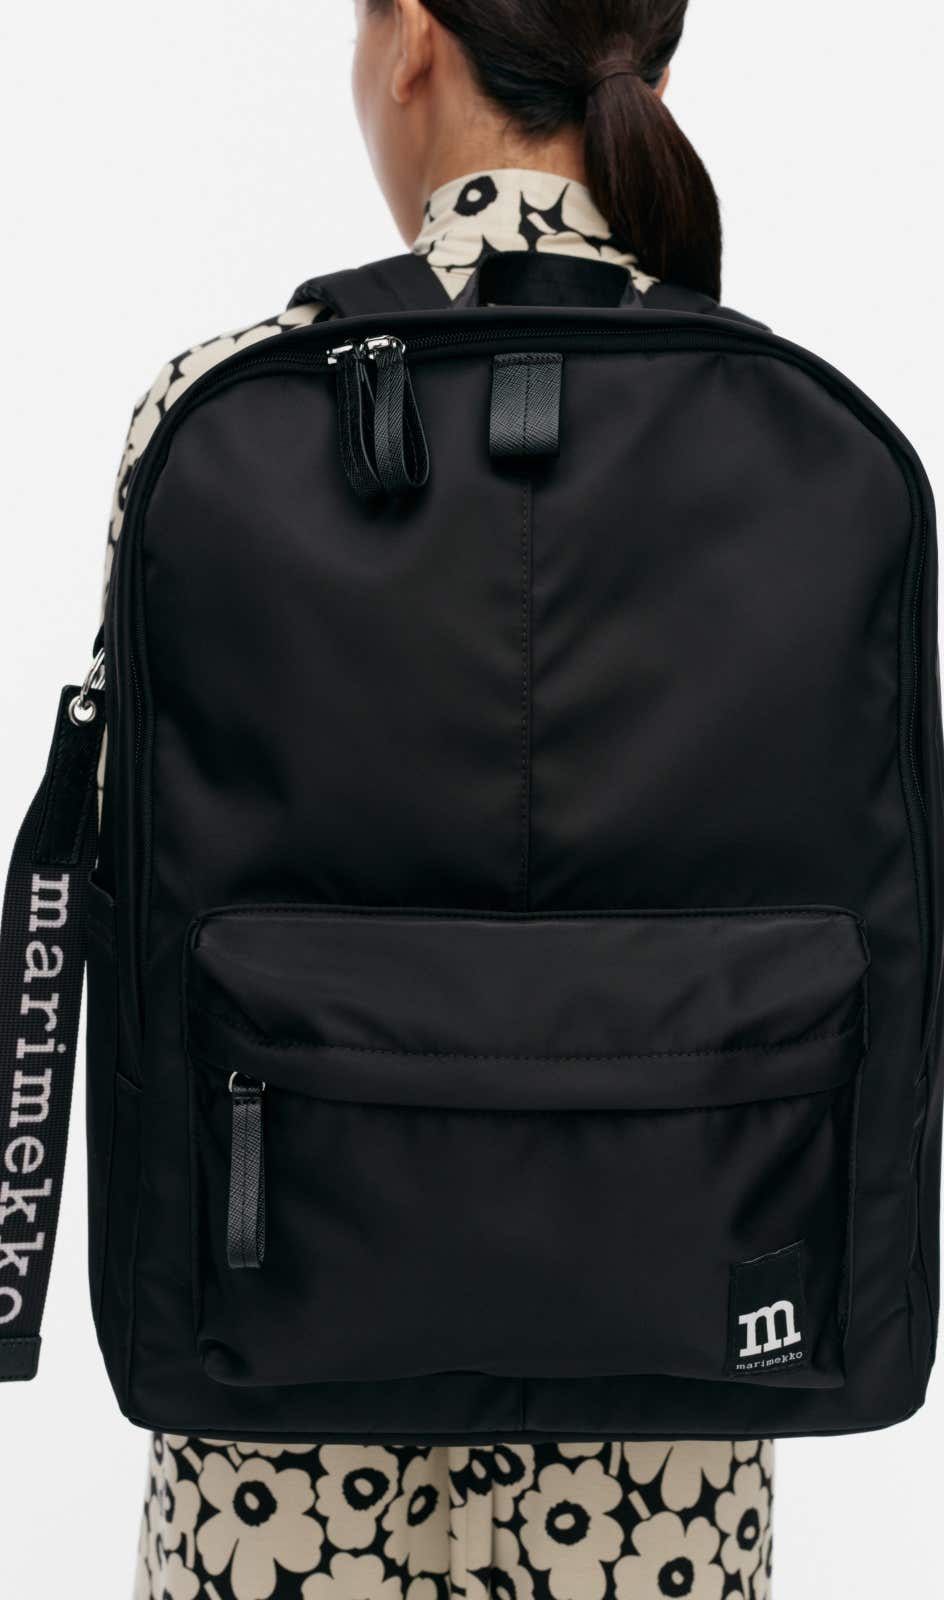 Zip Top Backpack Solid